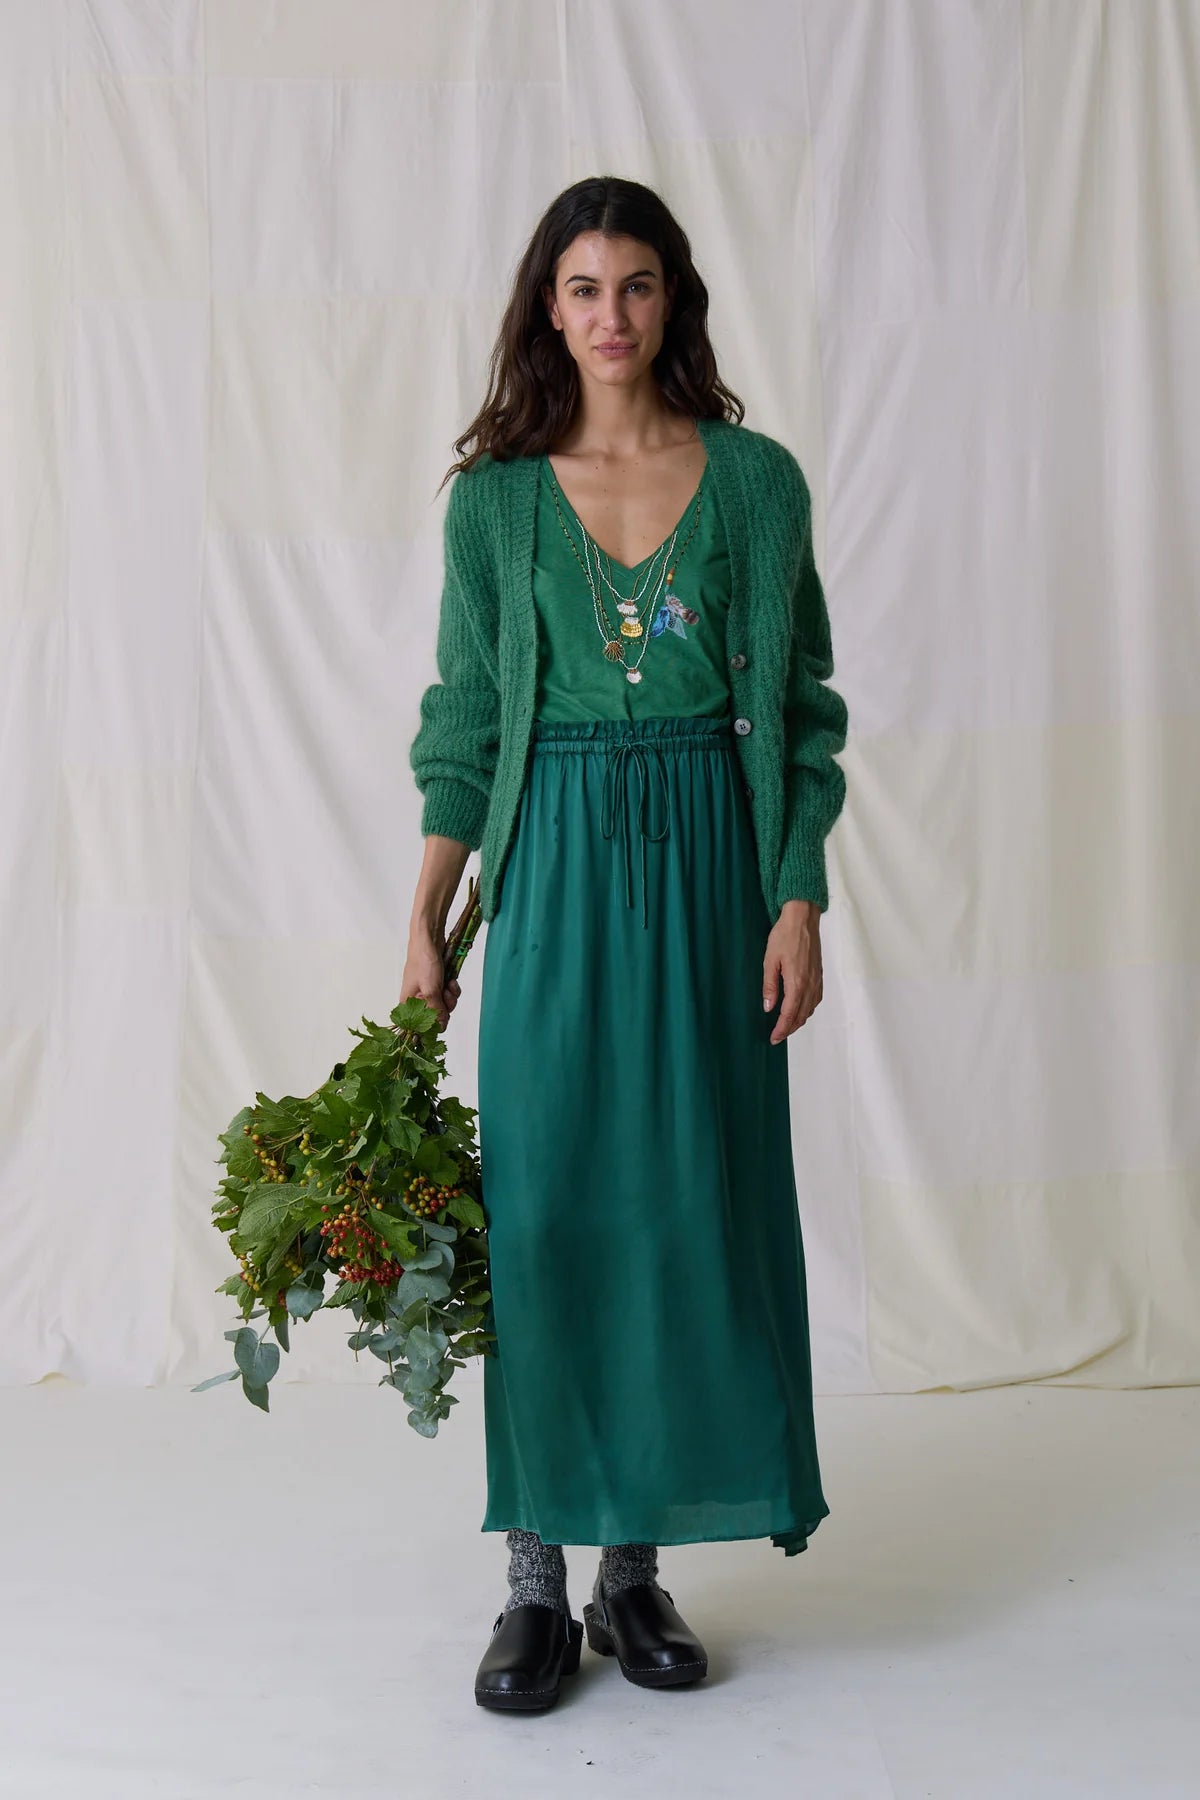 Leon &amp; Harper Juliette Plain Skirt - Emerald